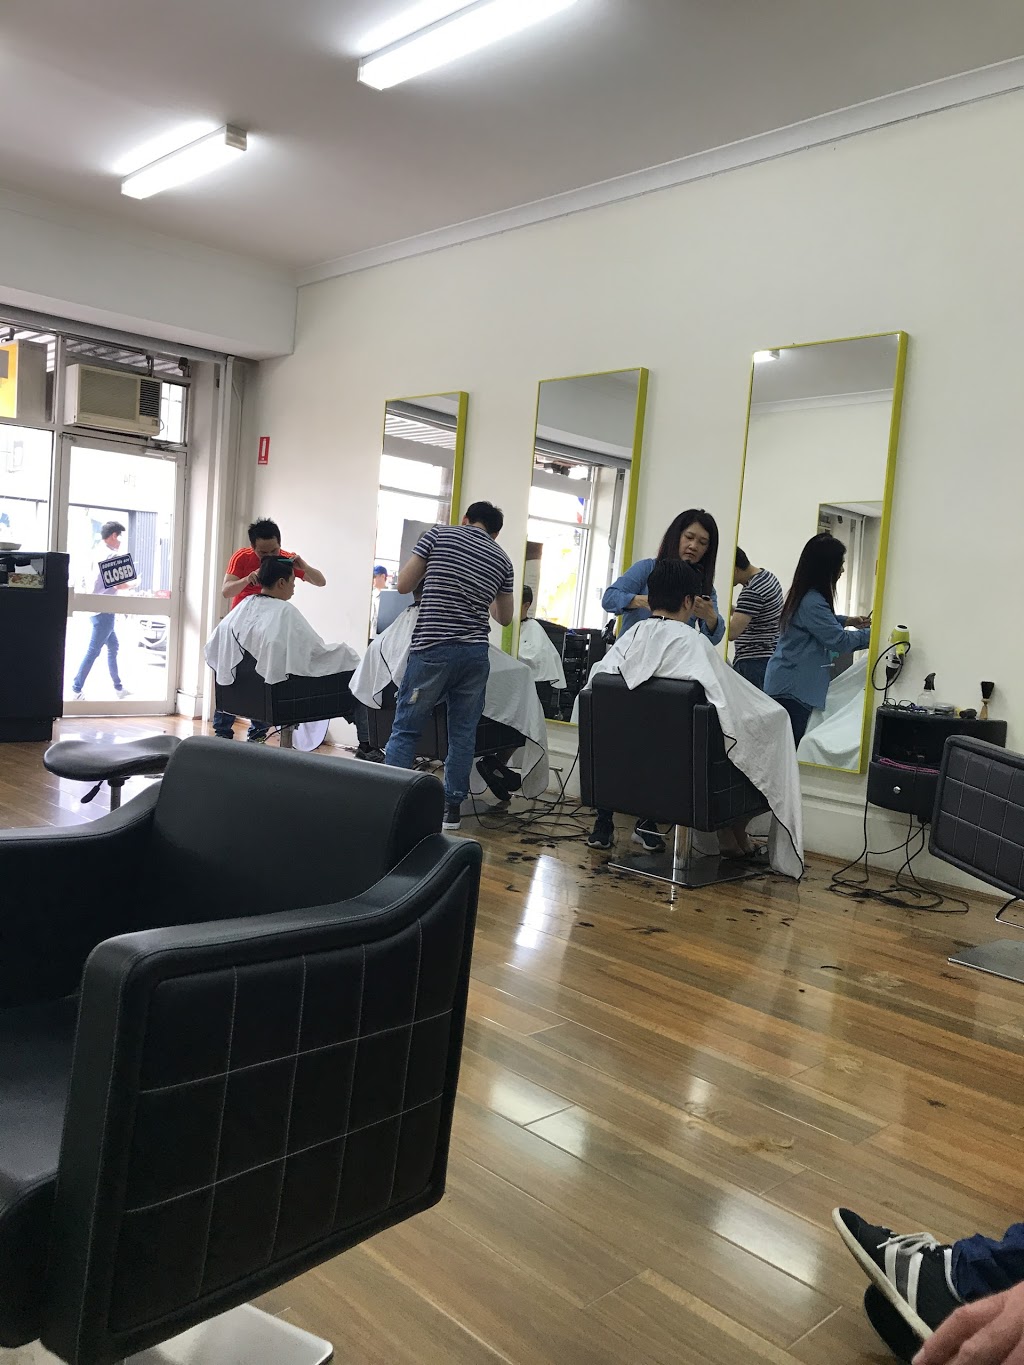 HR Hair Salon | hair care | 274 Victoria St, Richmond VIC 3121, Australia | 90431972 OR +61 90431972